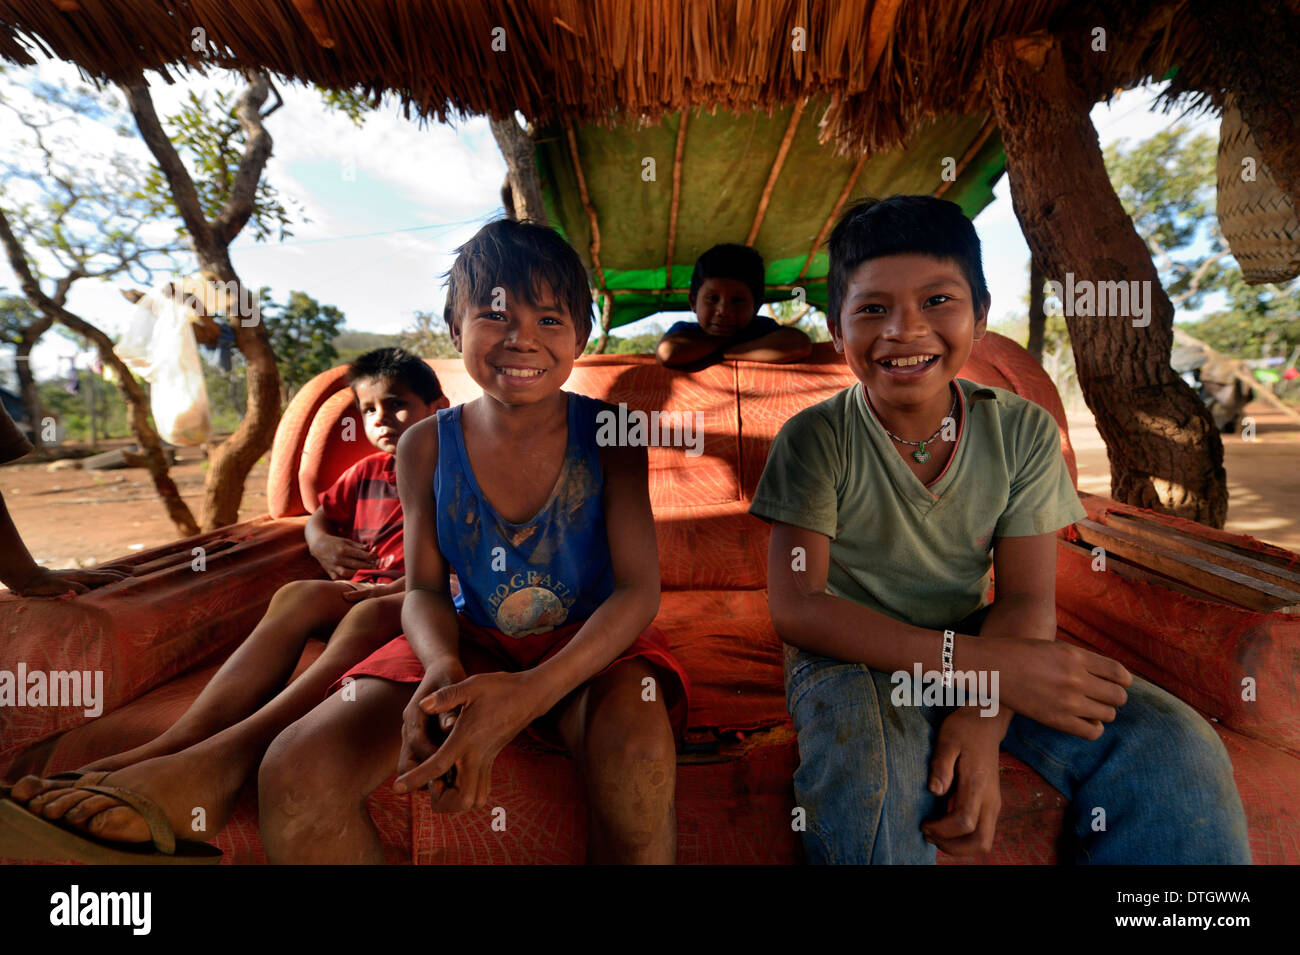 Bambini indigeni seduti su un vecchio divano in ombra, nel villaggio del popolo Xavantes, Tres Rios vicino alla missione di Foto Stock